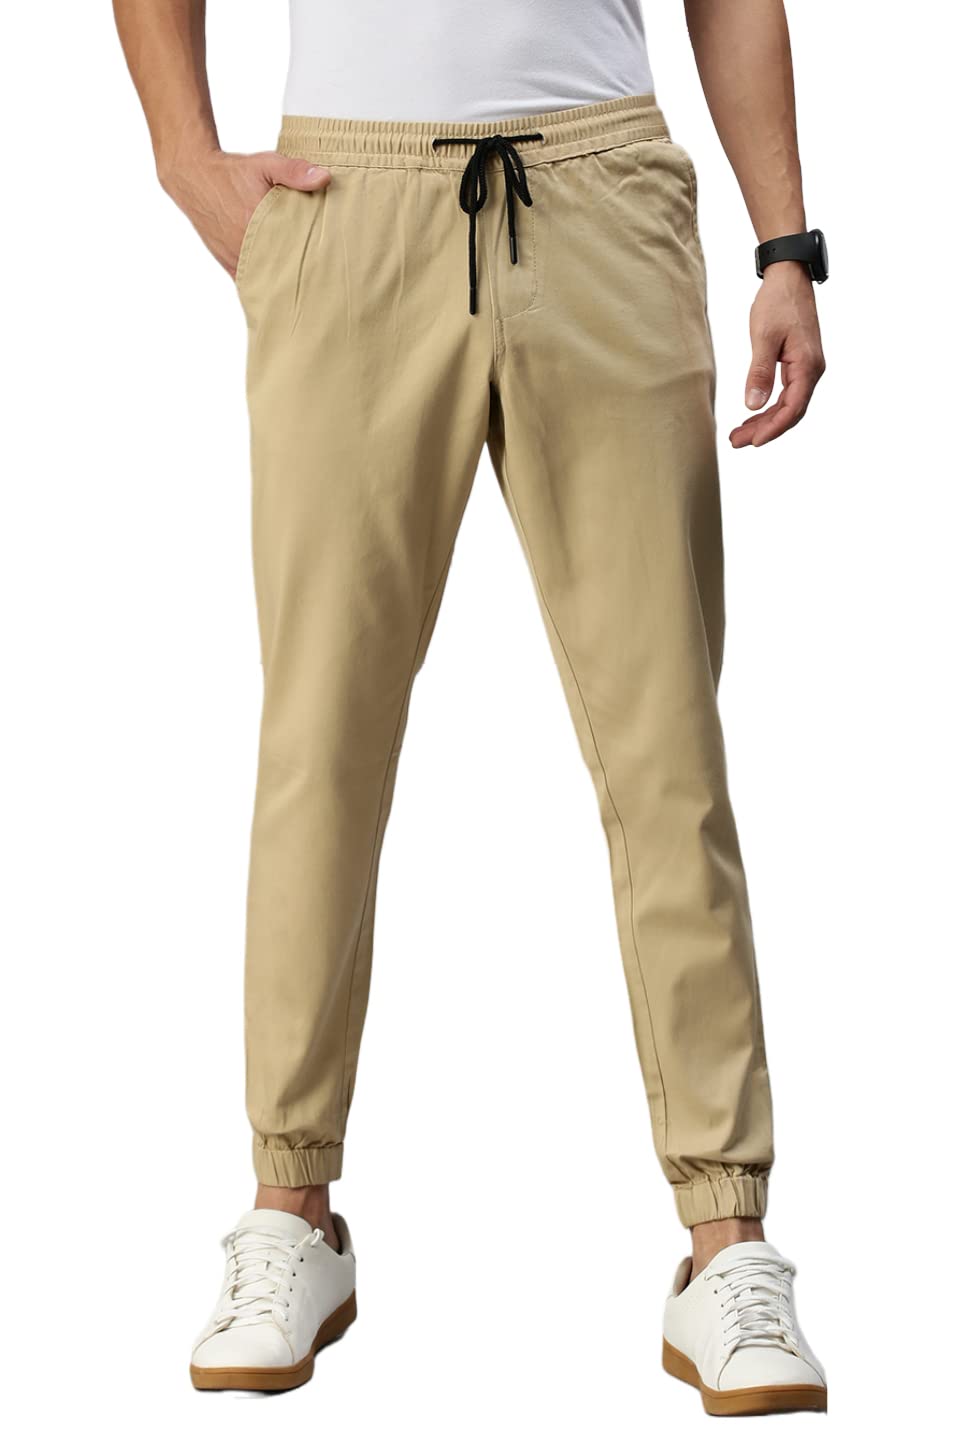 Peppyzone Cotton Jogger Pants for Men (36, Beige)